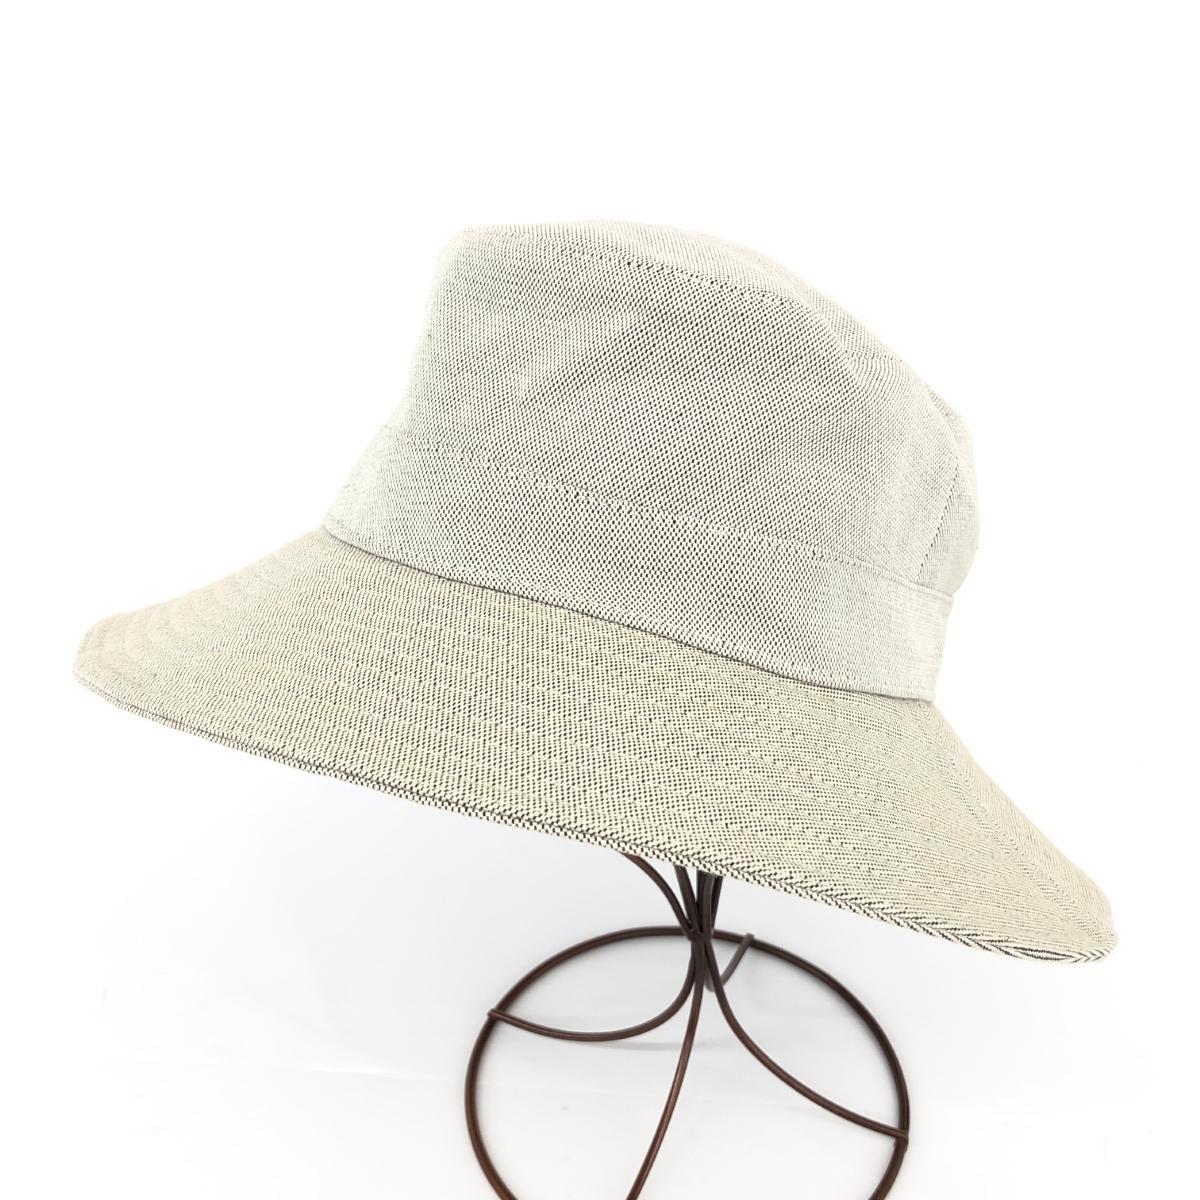 ◆HERMES エルメス ハット 57cm◆ グレー レディース 帽子 ハット hat 服飾小物